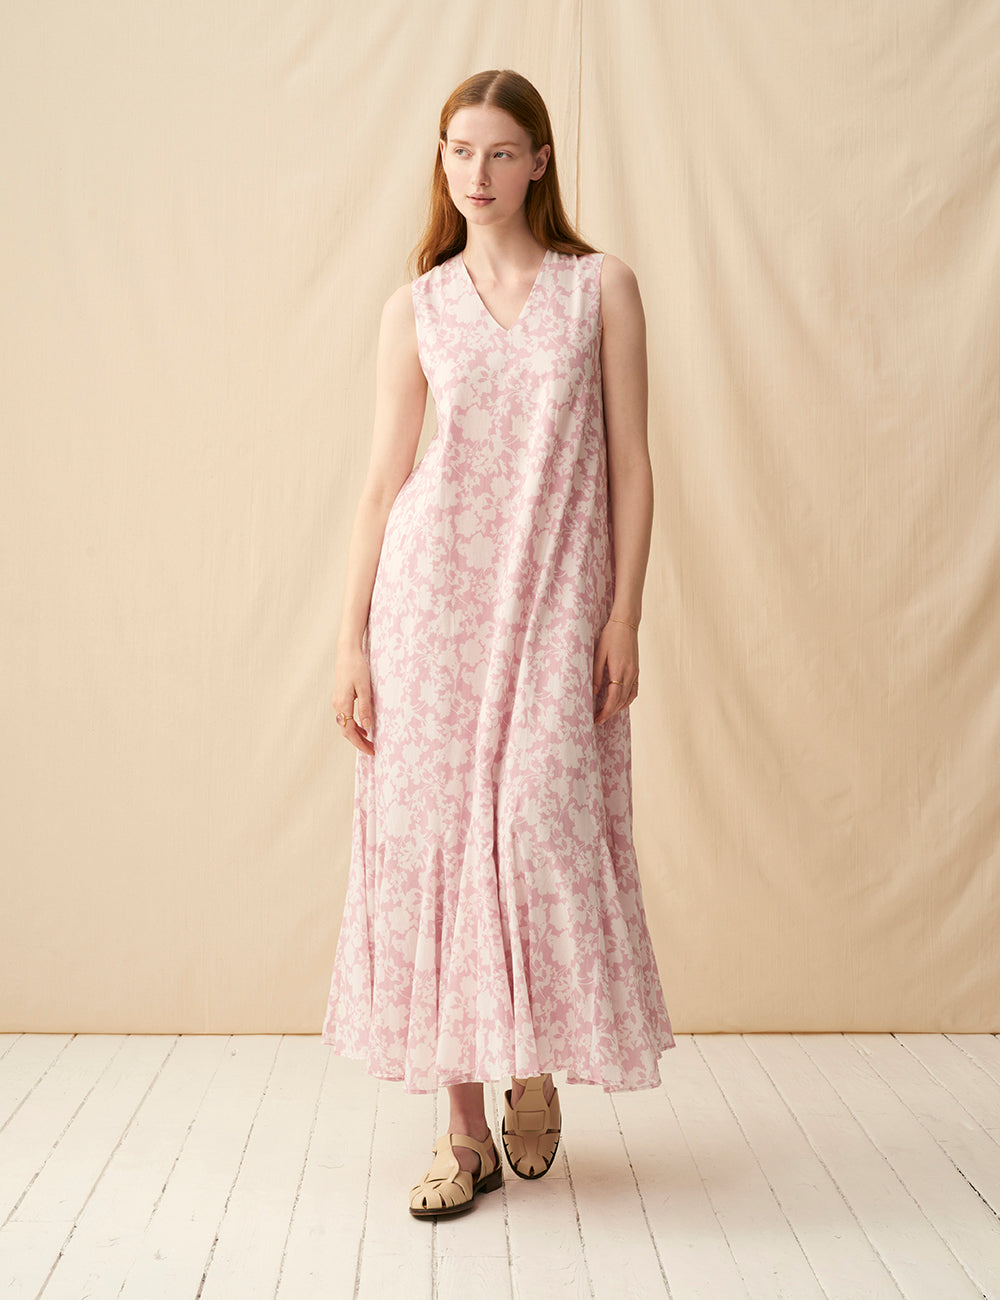 夏の月影のドレス <br>Garden Shadows/Pink